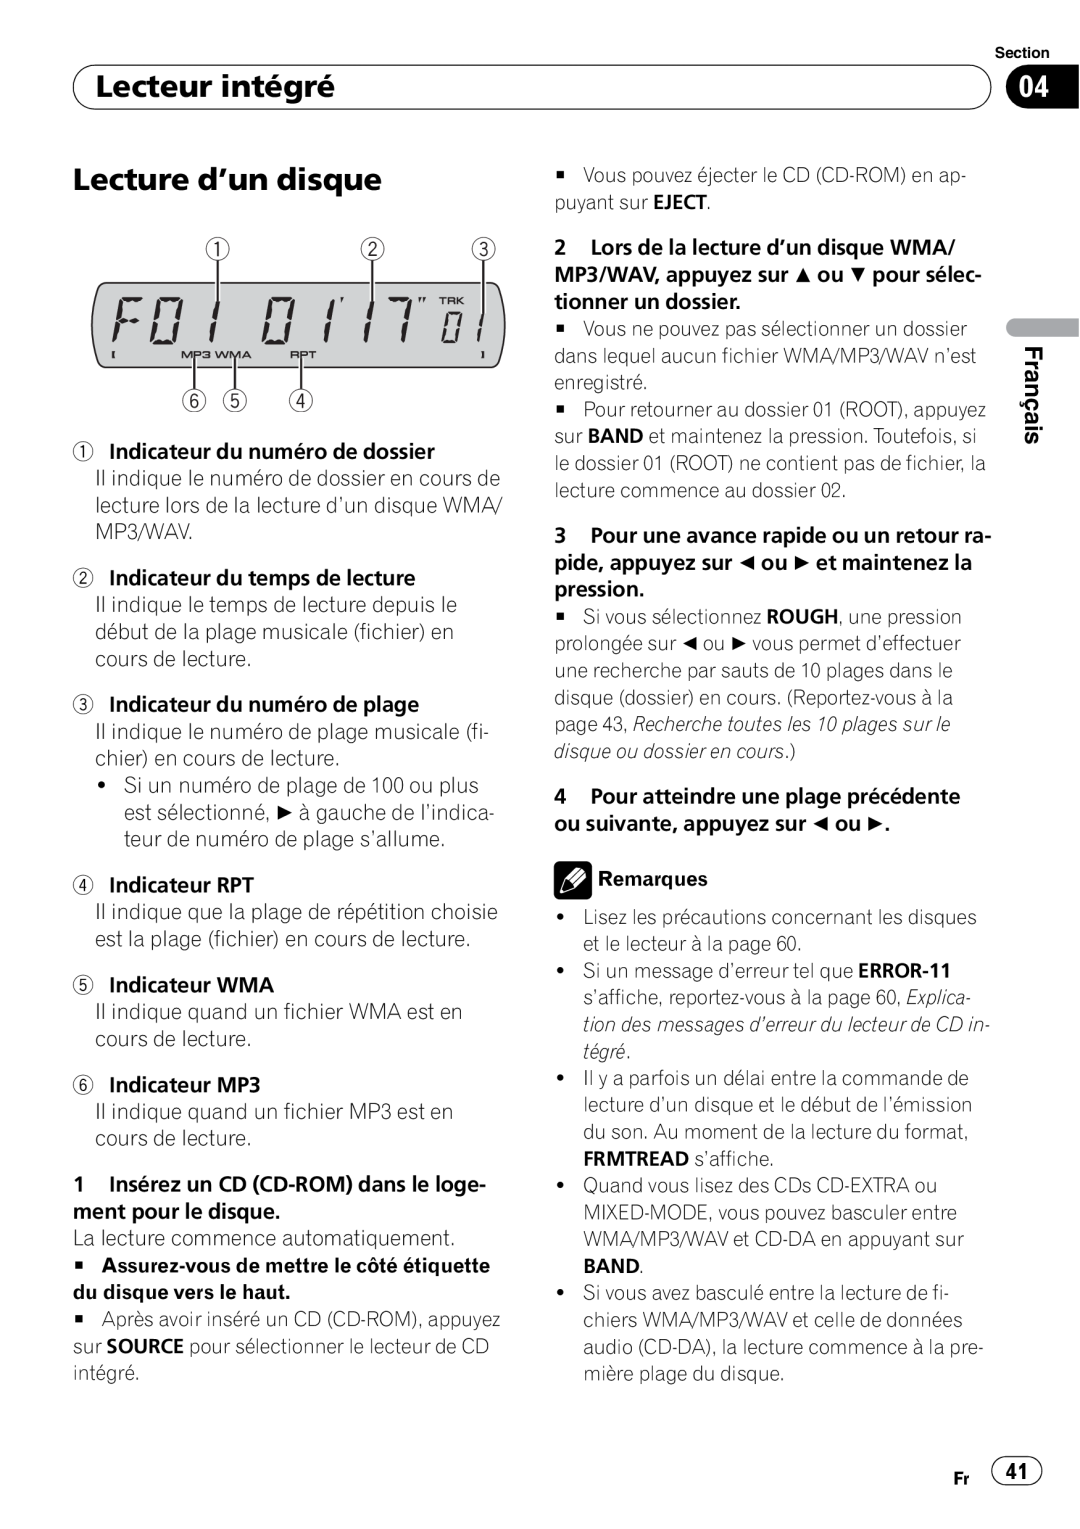 Sony DEH-P2900MP operation manual Lecteur intégré, Lecture d’un disque, 1 2 6 5, Français 